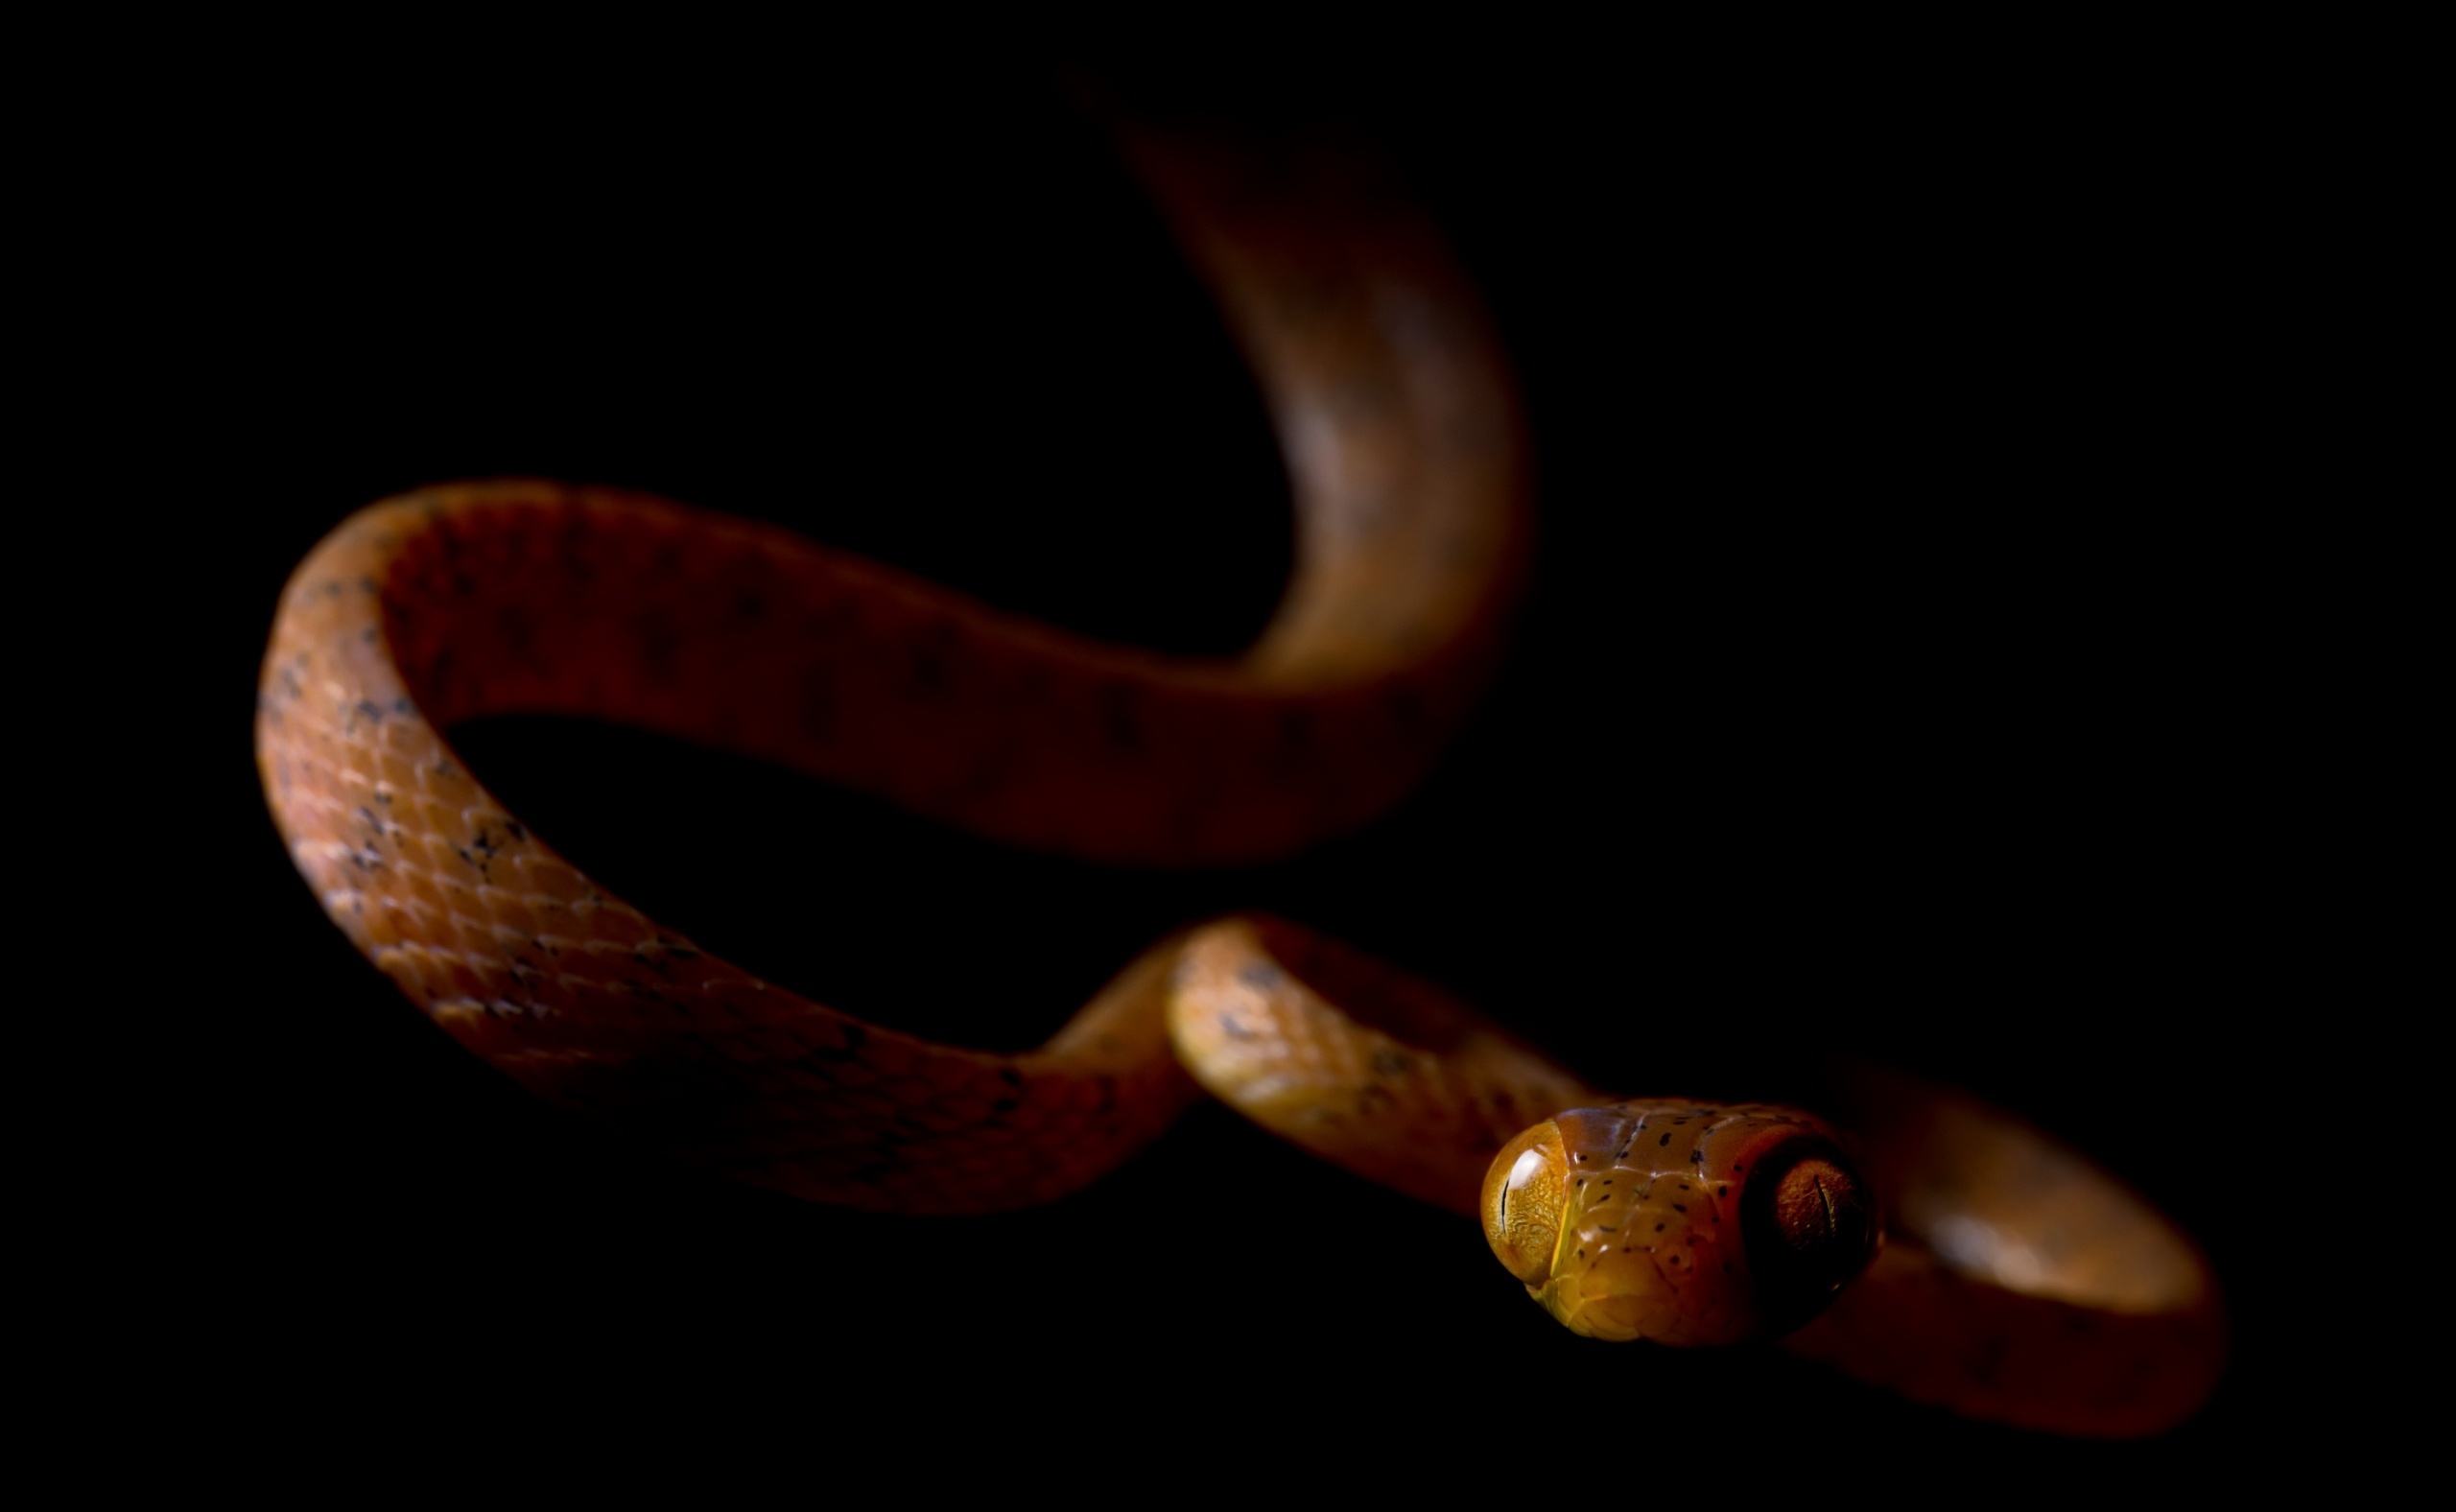 Schlange desktopbilder, Snake pictures, Reptile backgrounds, Serpent wallpapers, 2560x1580 HD Desktop